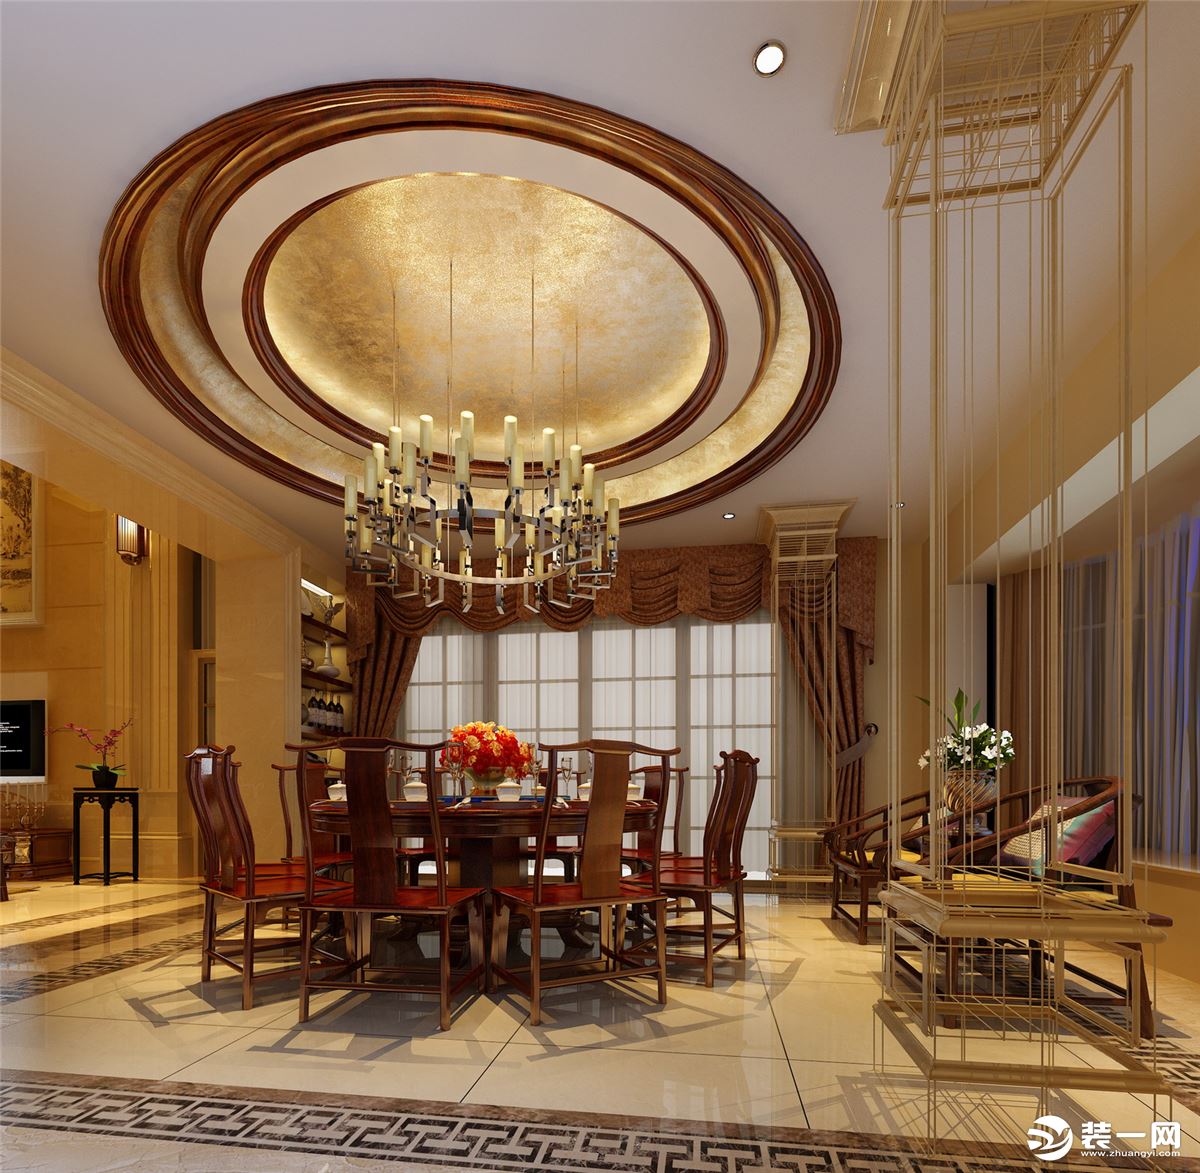 中惠香樟绿洲小区140平方三居室中式风格餐厅装修效果图